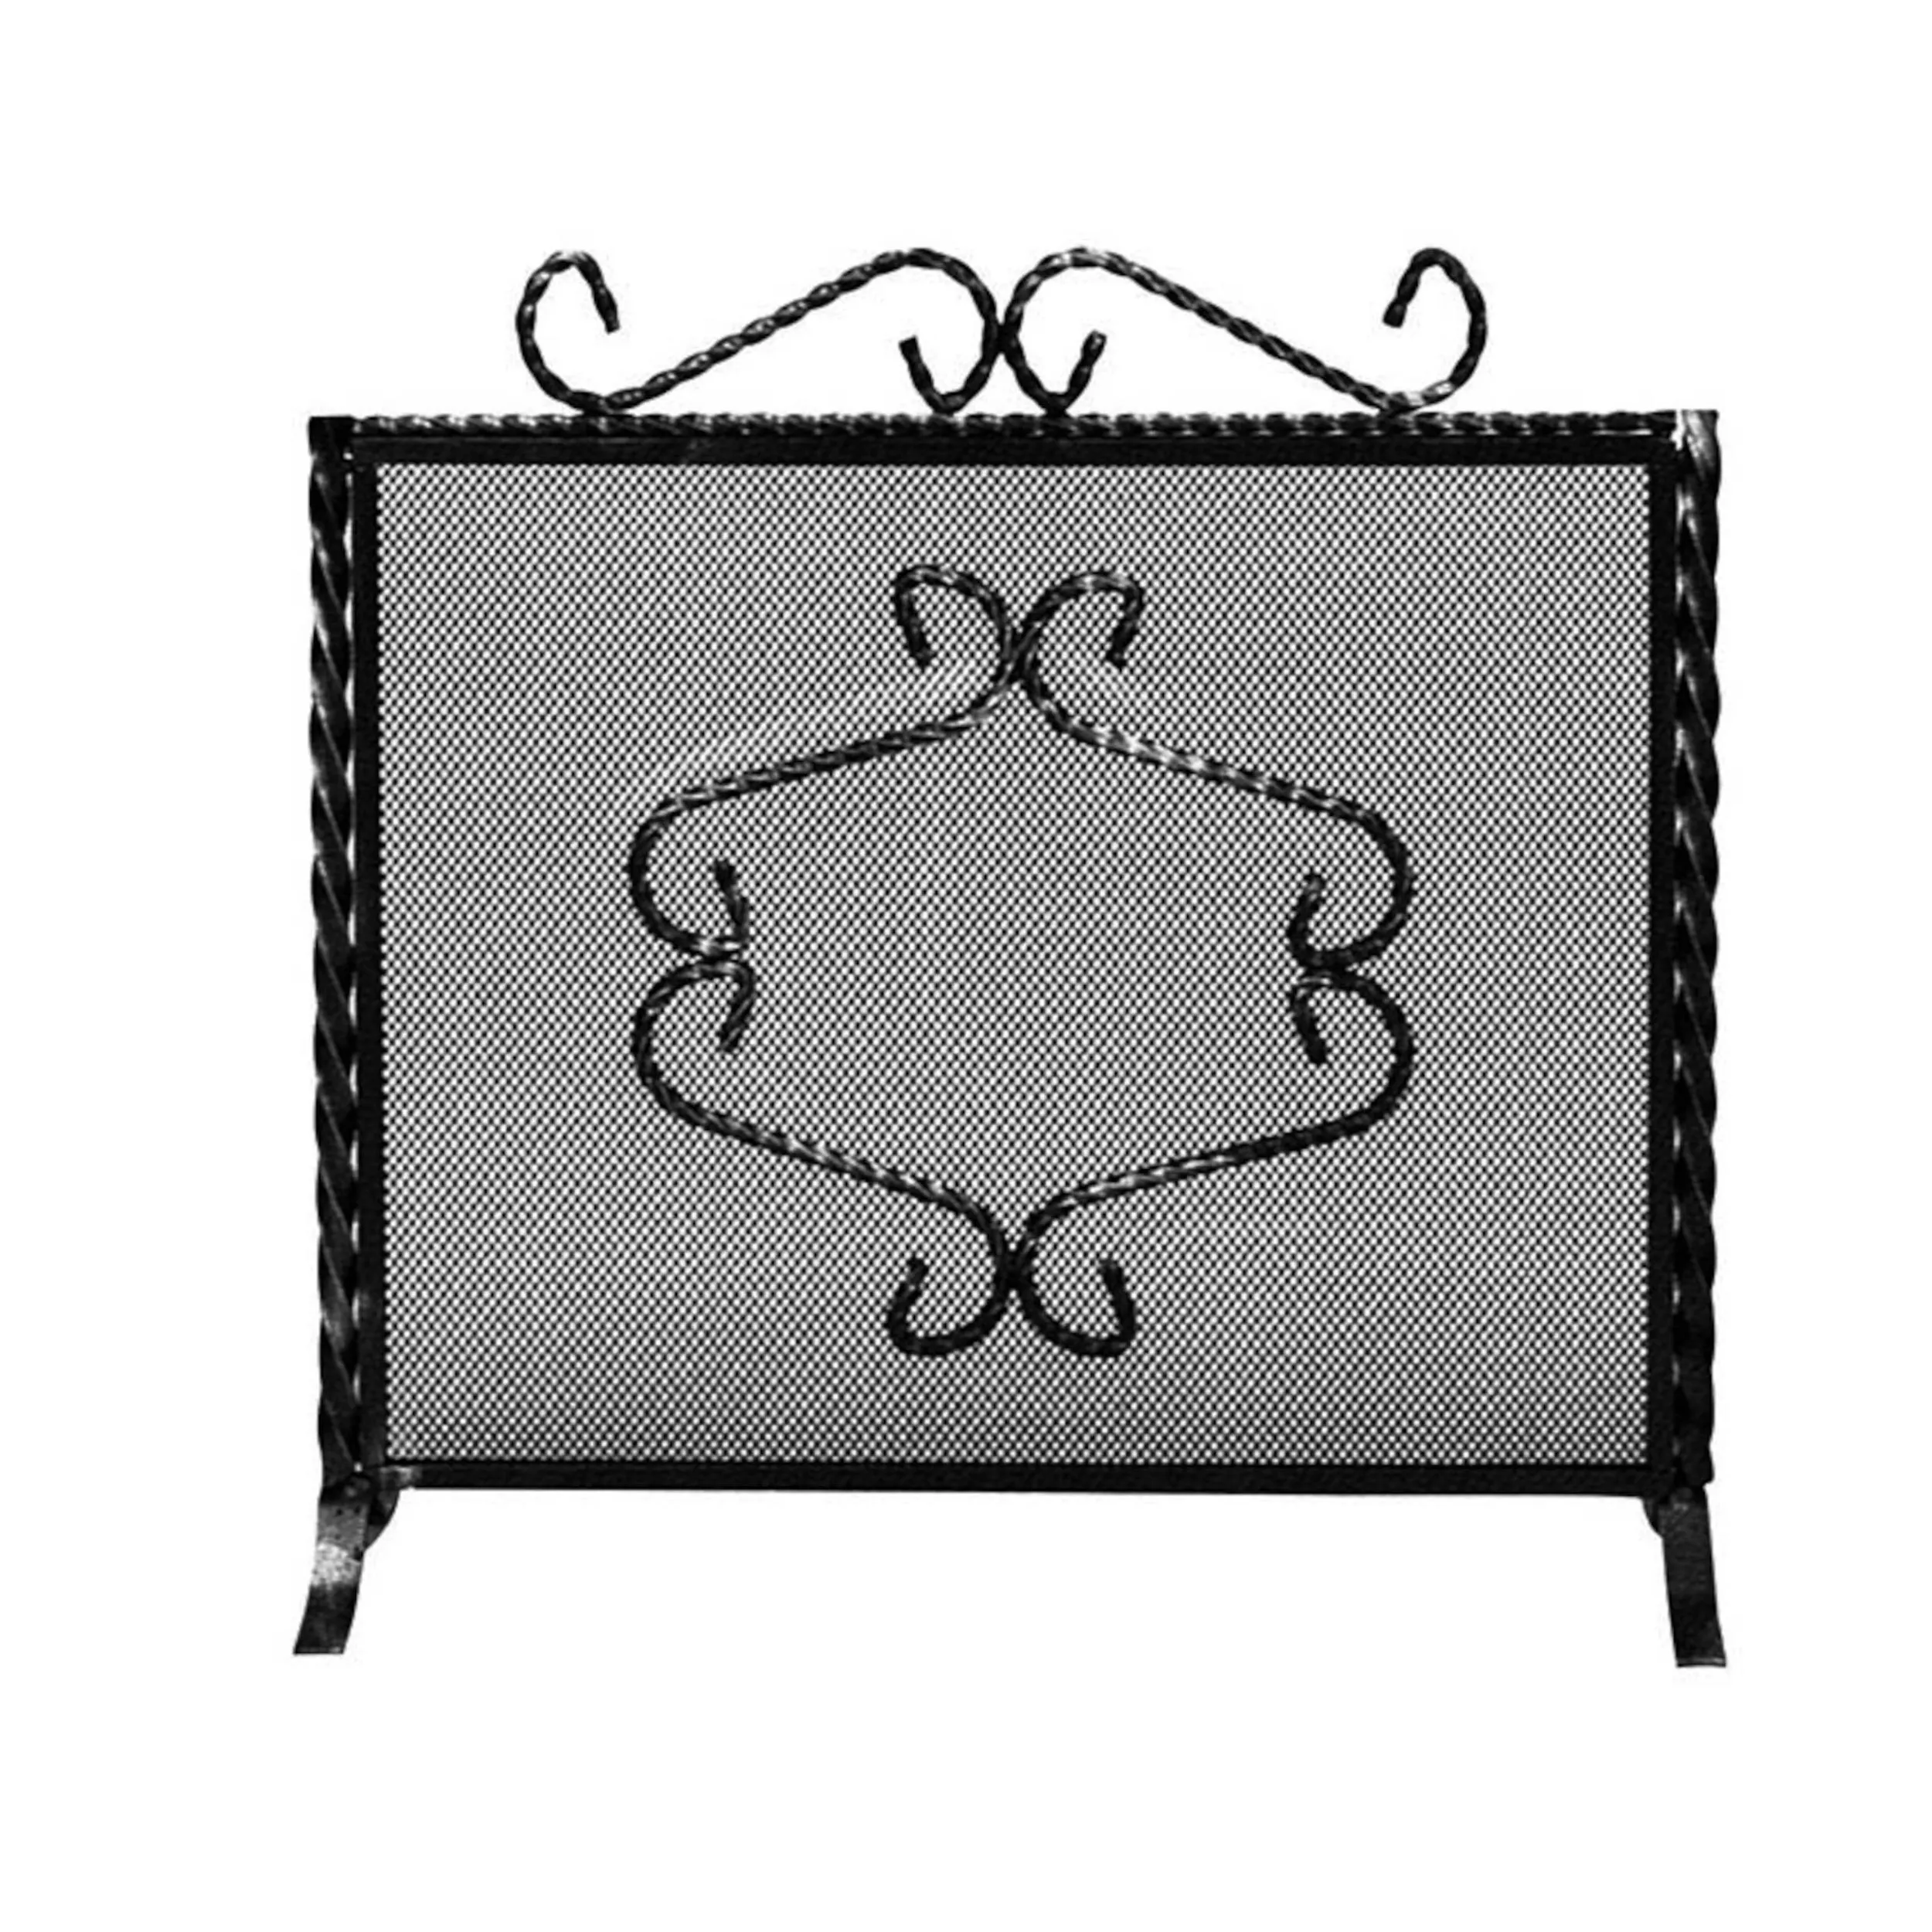 Parascintille per camino in ferro battuto forgiato a mano 64xh50 cm - anta unica con cerniera lavorazione artigianale stile classico, rete nera